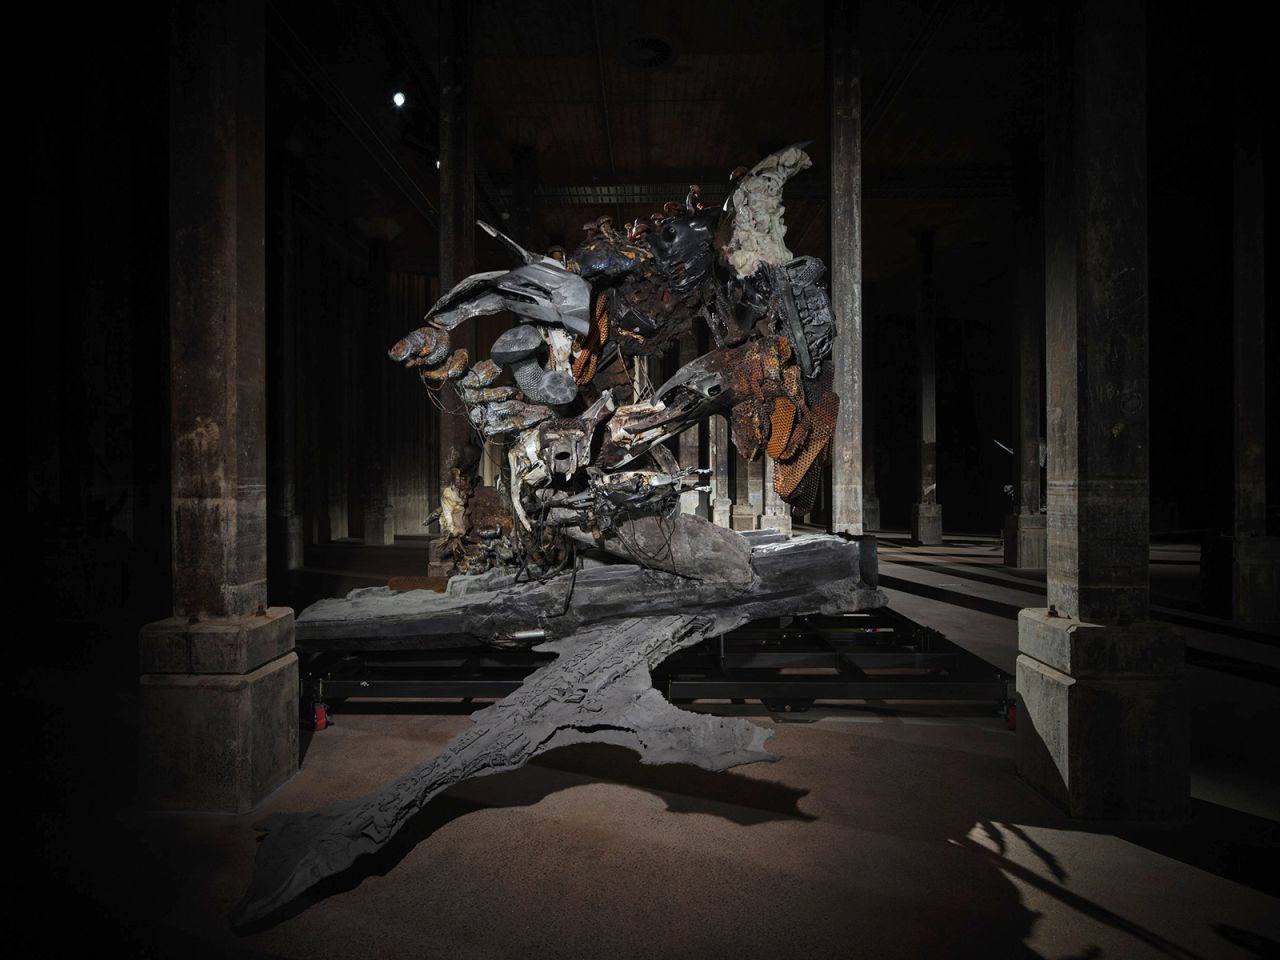 Adrián Villar Rojas' installation "The End of Imagination."